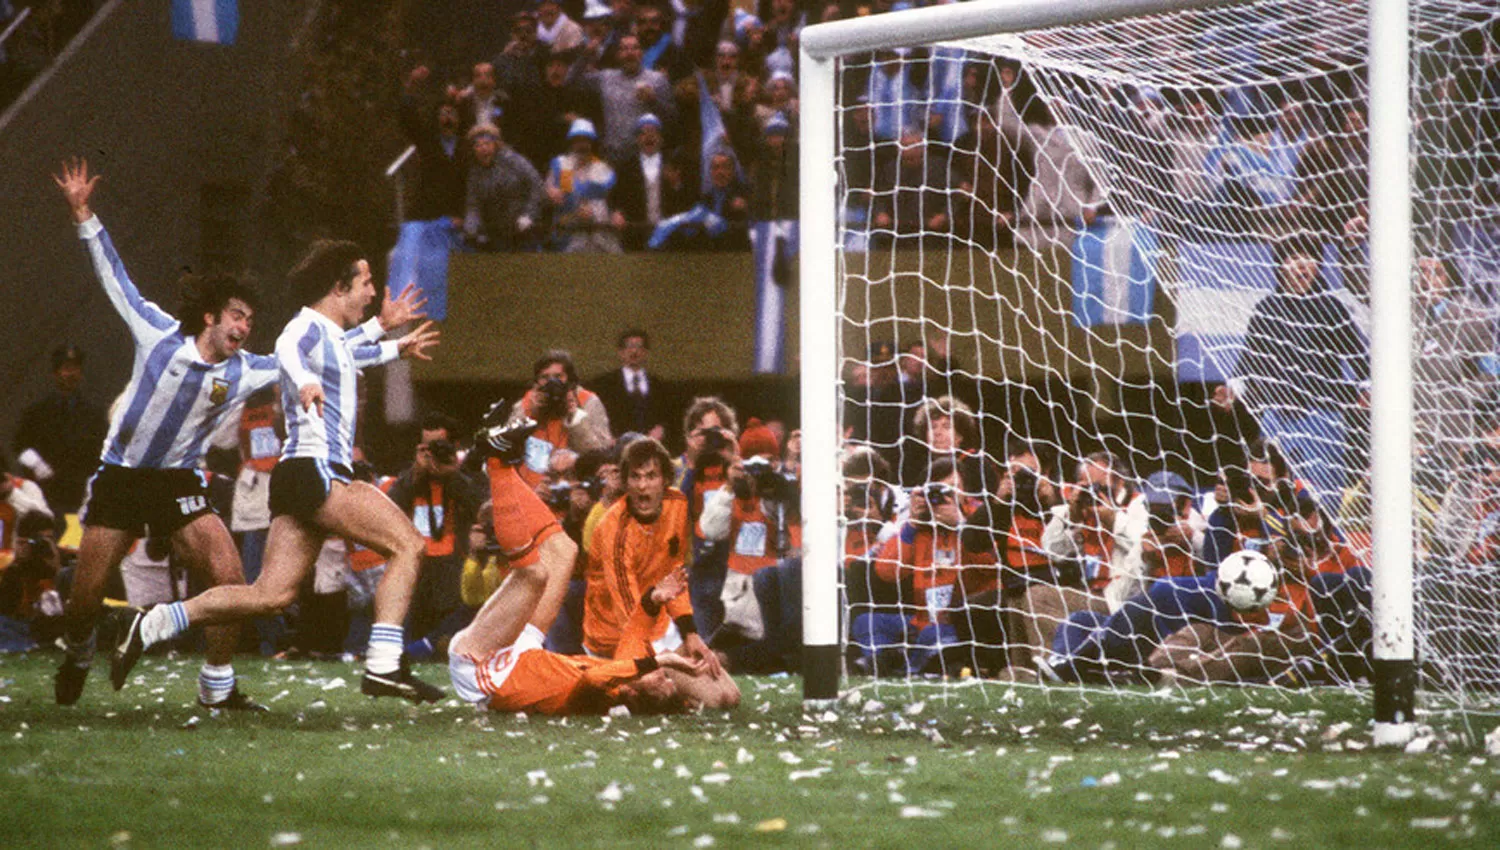 DETALLE. Kempes celebra su segundo gol contra Holanda; los arcos tienen la base pintada de negro. FOTO TOMADA DE CLARÍN